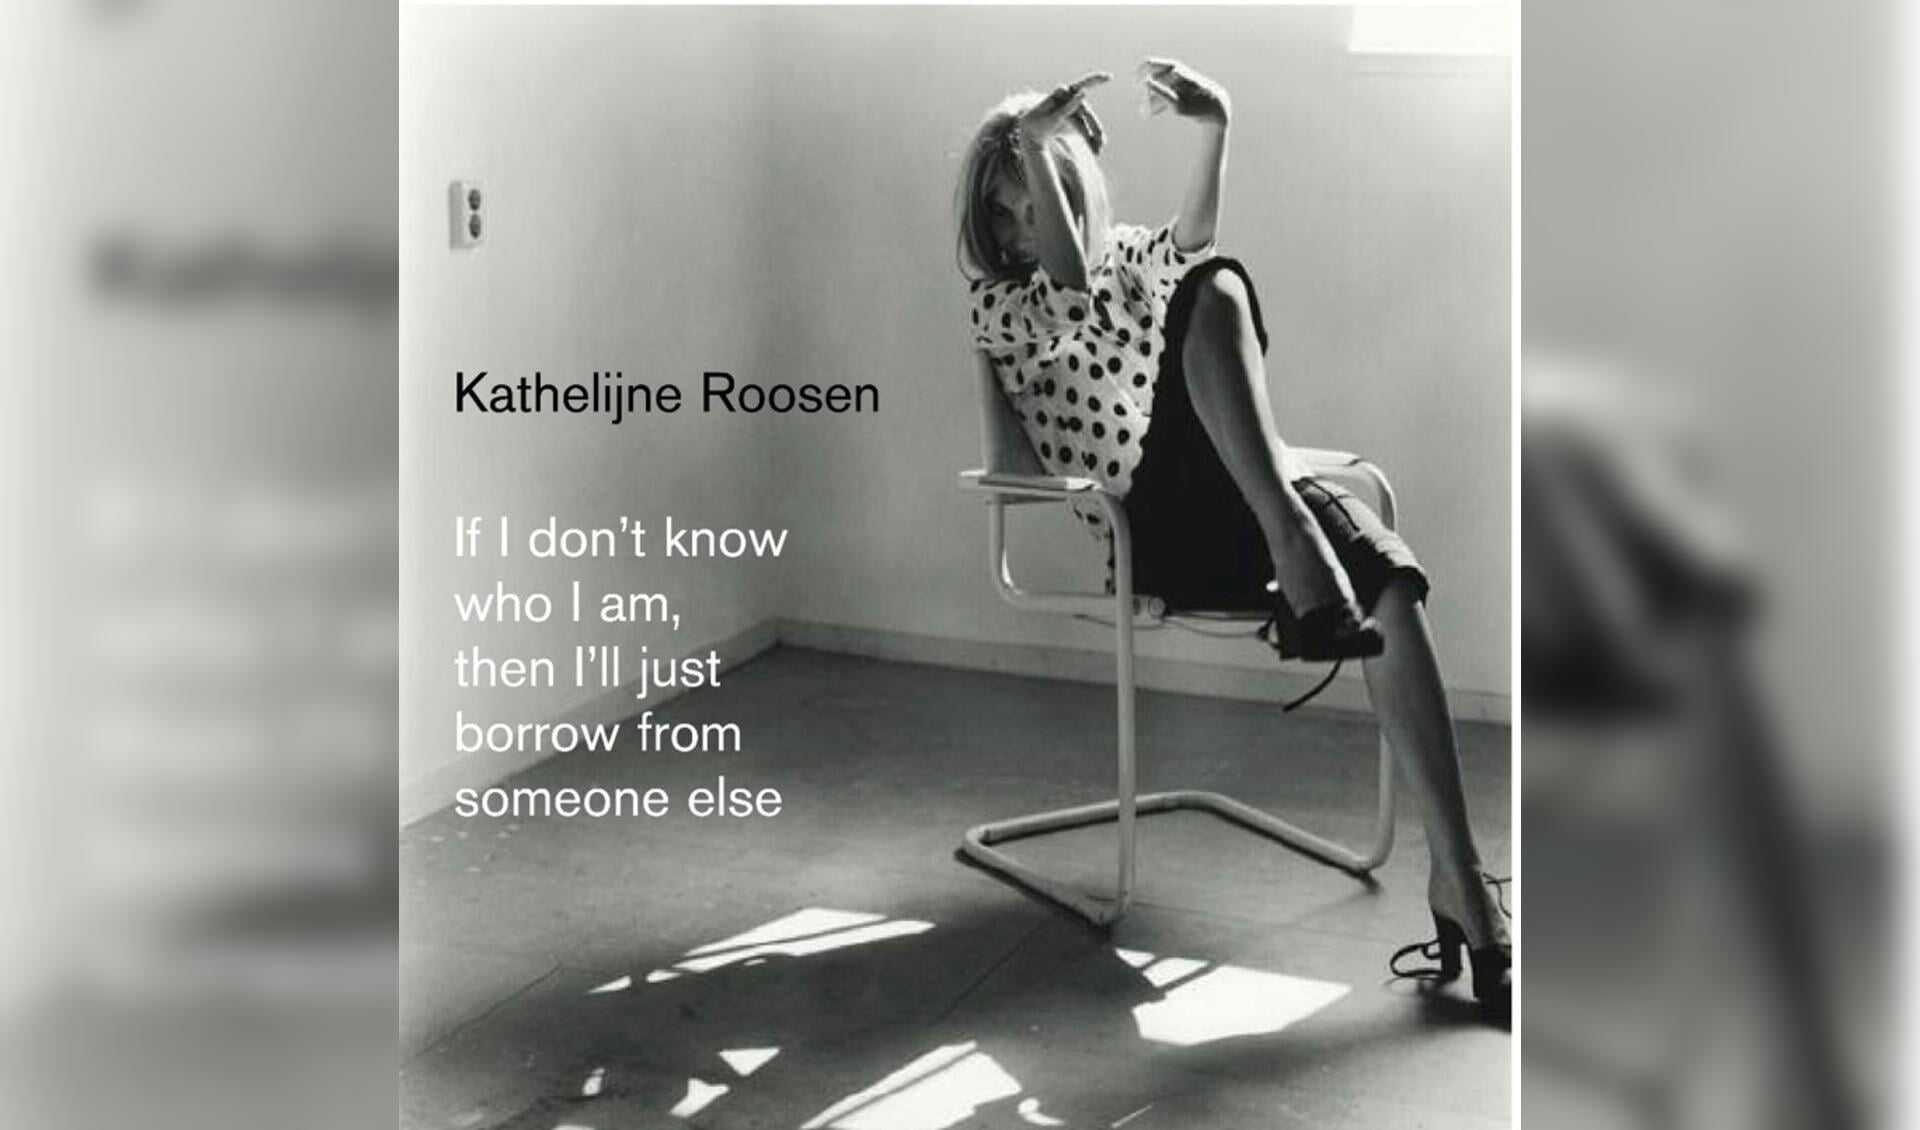 De omslag van het fotoboek van Kathelijne Roosen. foto Kathelijne Roosen